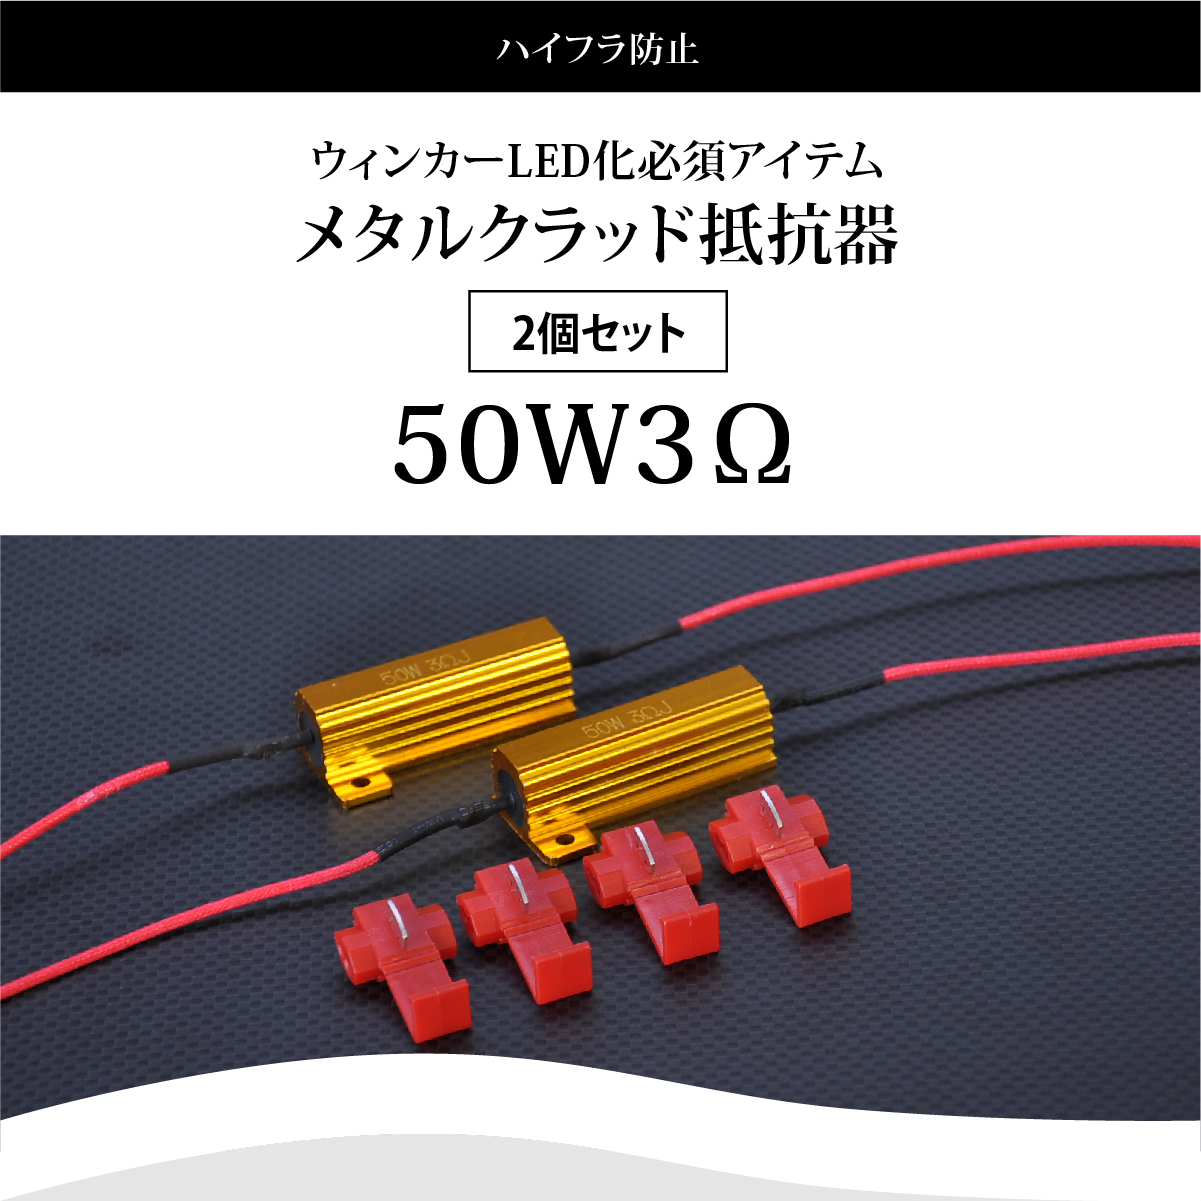 ハイフラ防止 メタルクラッド抵抗器 ウインカー LED化 2個セット 送料無料 :metal-resistor:CRAZY DIAMOND - 通販  - Yahoo!ショッピング